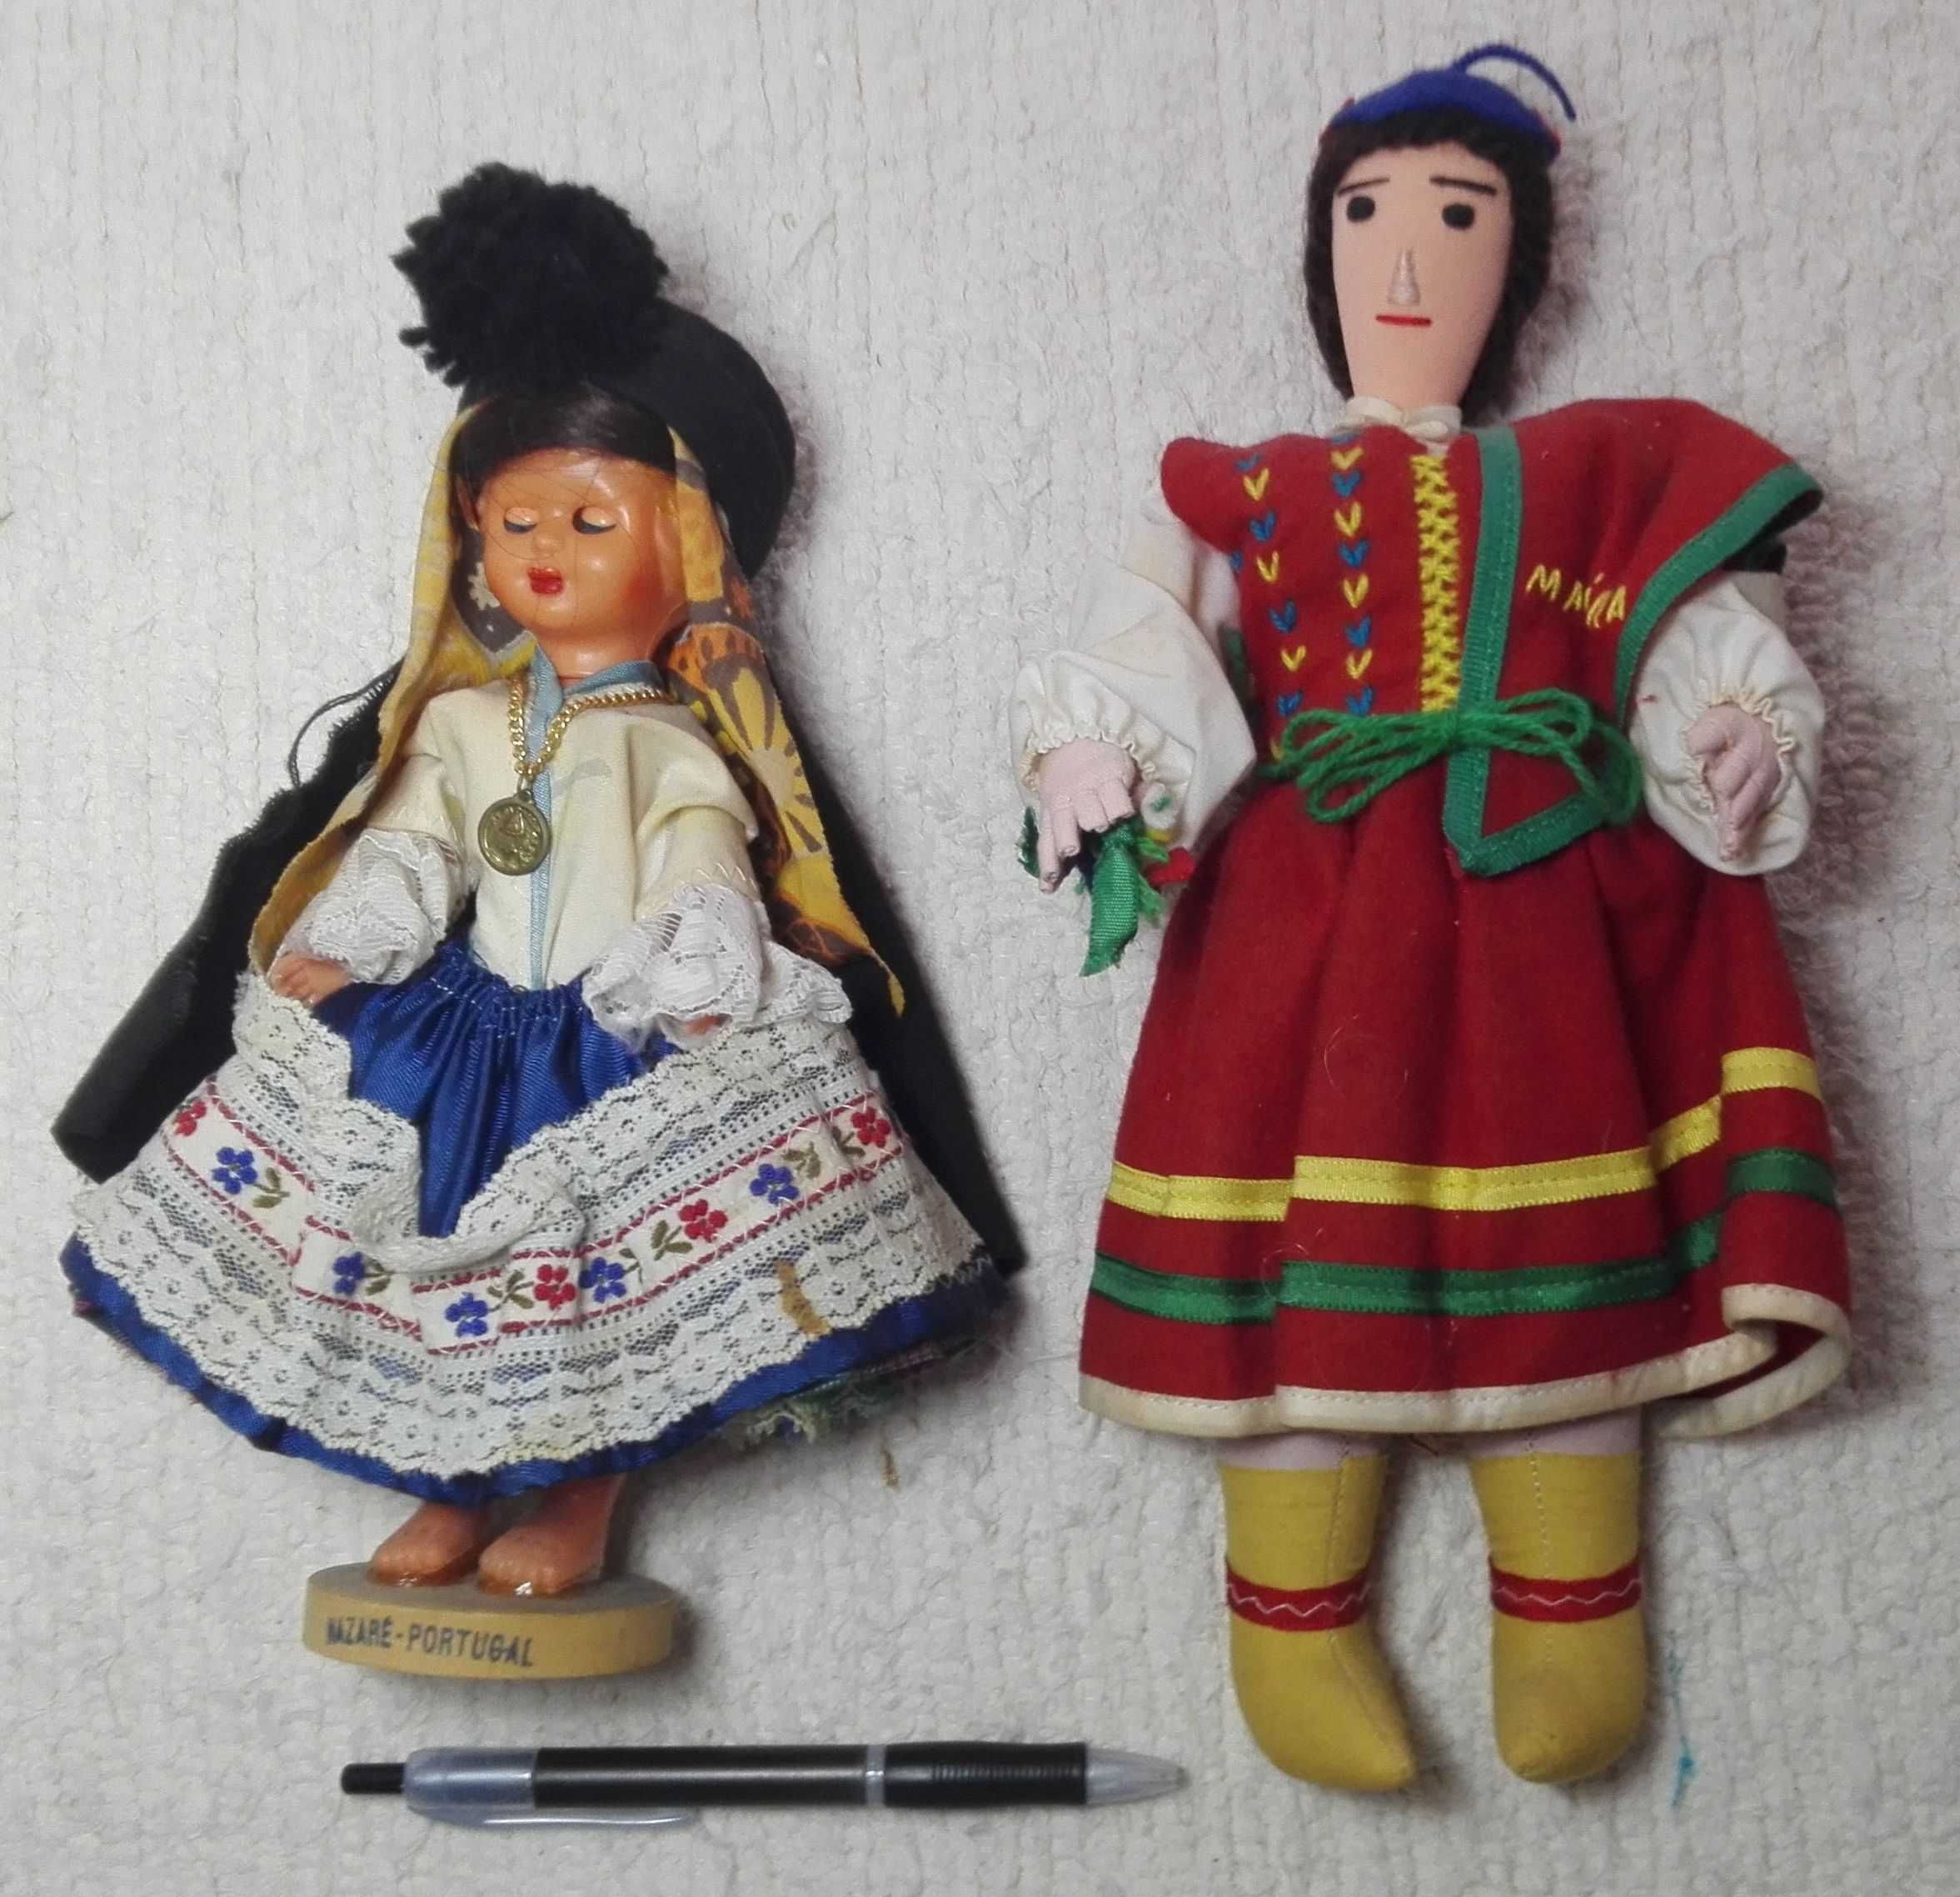 Bonecas trajes tipicos Nazaré/Madeira (vintage)